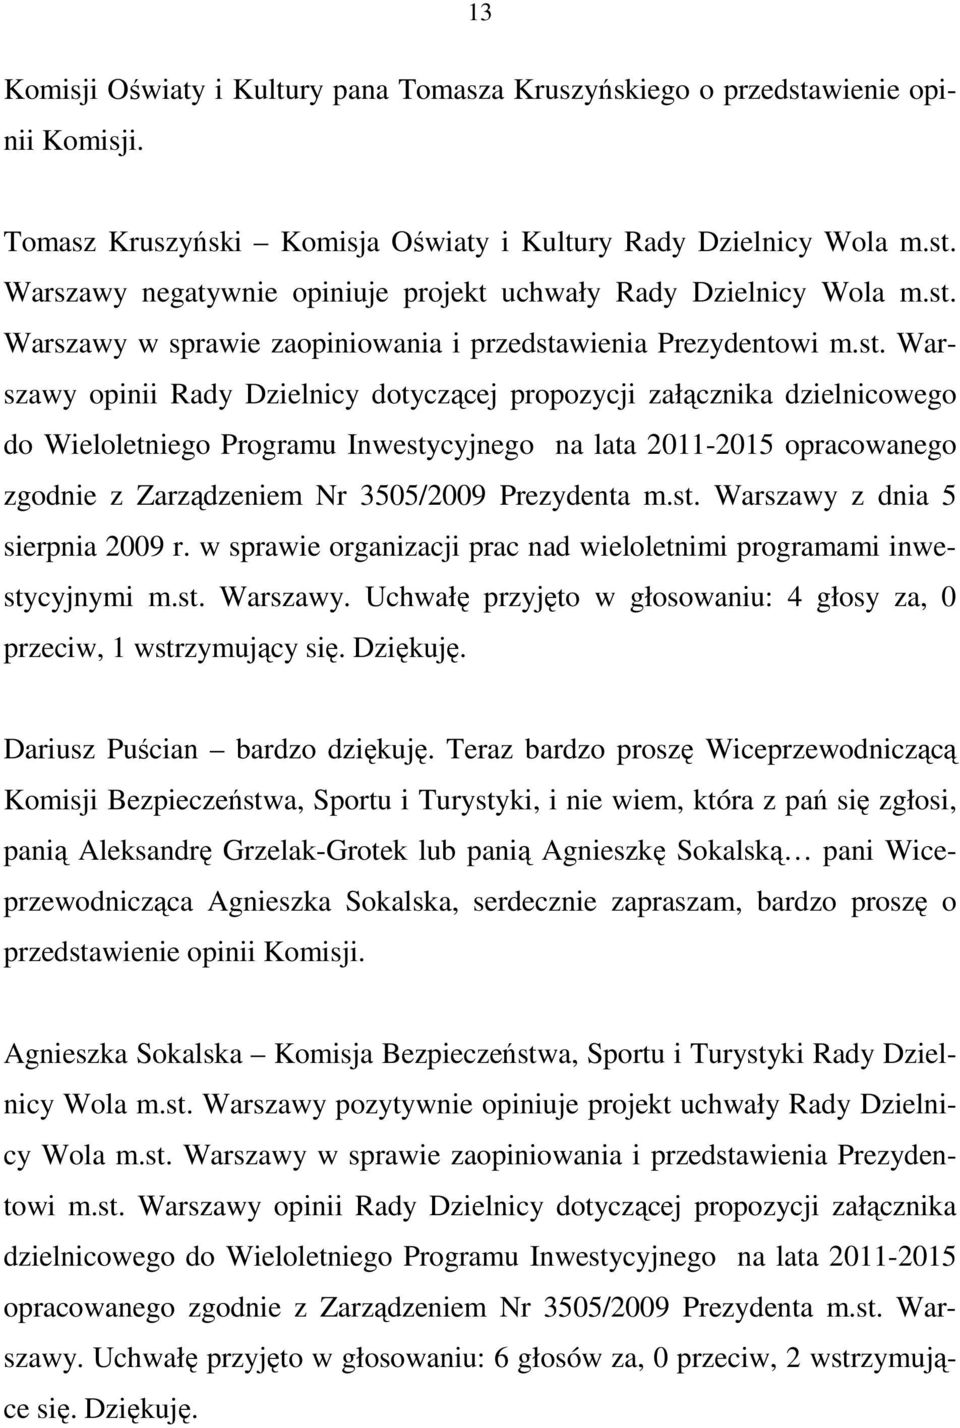 2011-2015 opracowanego zgodnie z Zarządzeniem Nr 3505/2009 Prezydenta m.st. Warszawy z dnia 5 sierpnia 2009 r. w sprawie organizacji prac nad wieloletnimi programami inwestycyjnymi m.st. Warszawy. Uchwałę przyjęto w głosowaniu: 4 głosy za, 0 przeciw, 1 wstrzymujący się.